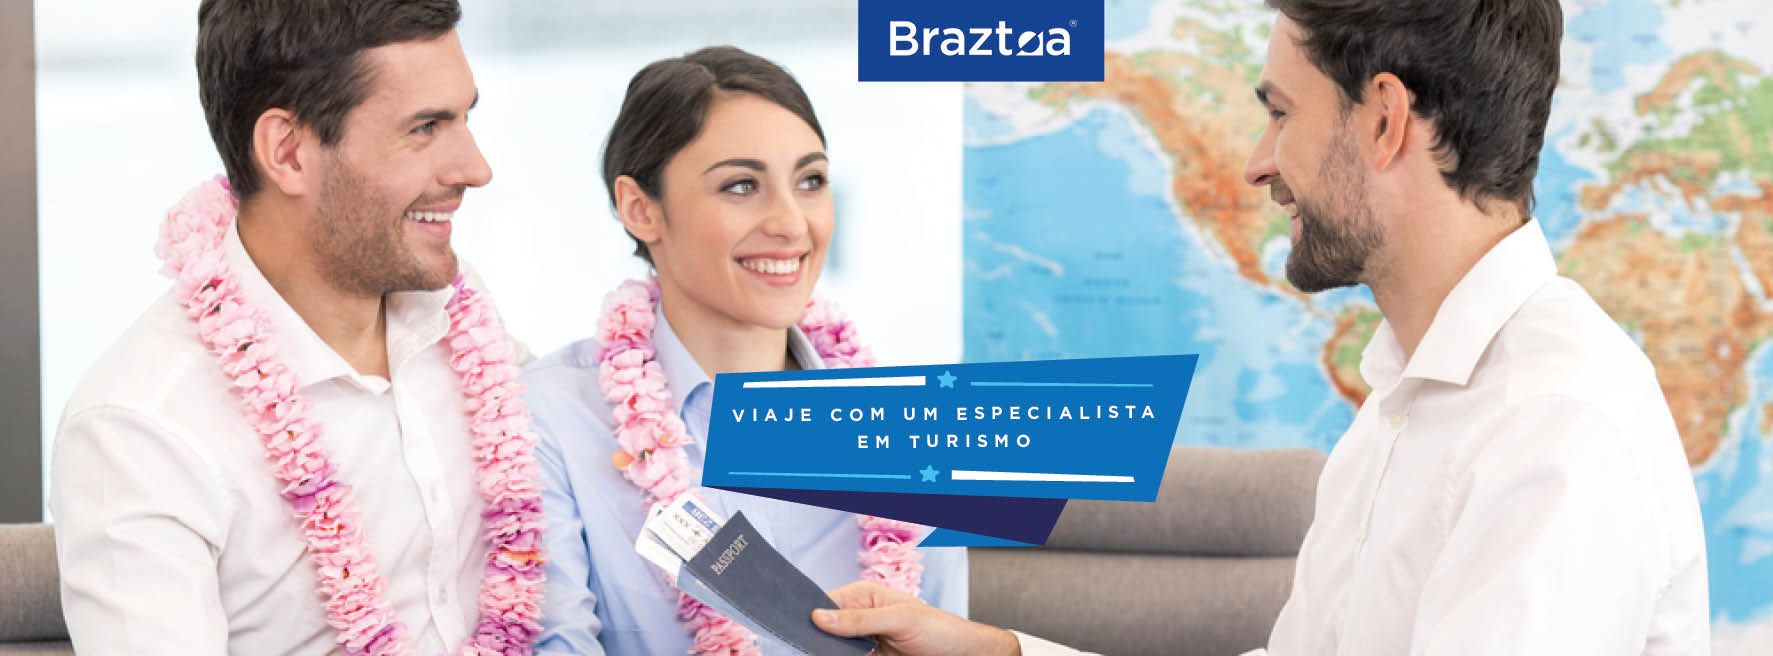 50º Encontro Comercial Braztoa - Turismo on Line